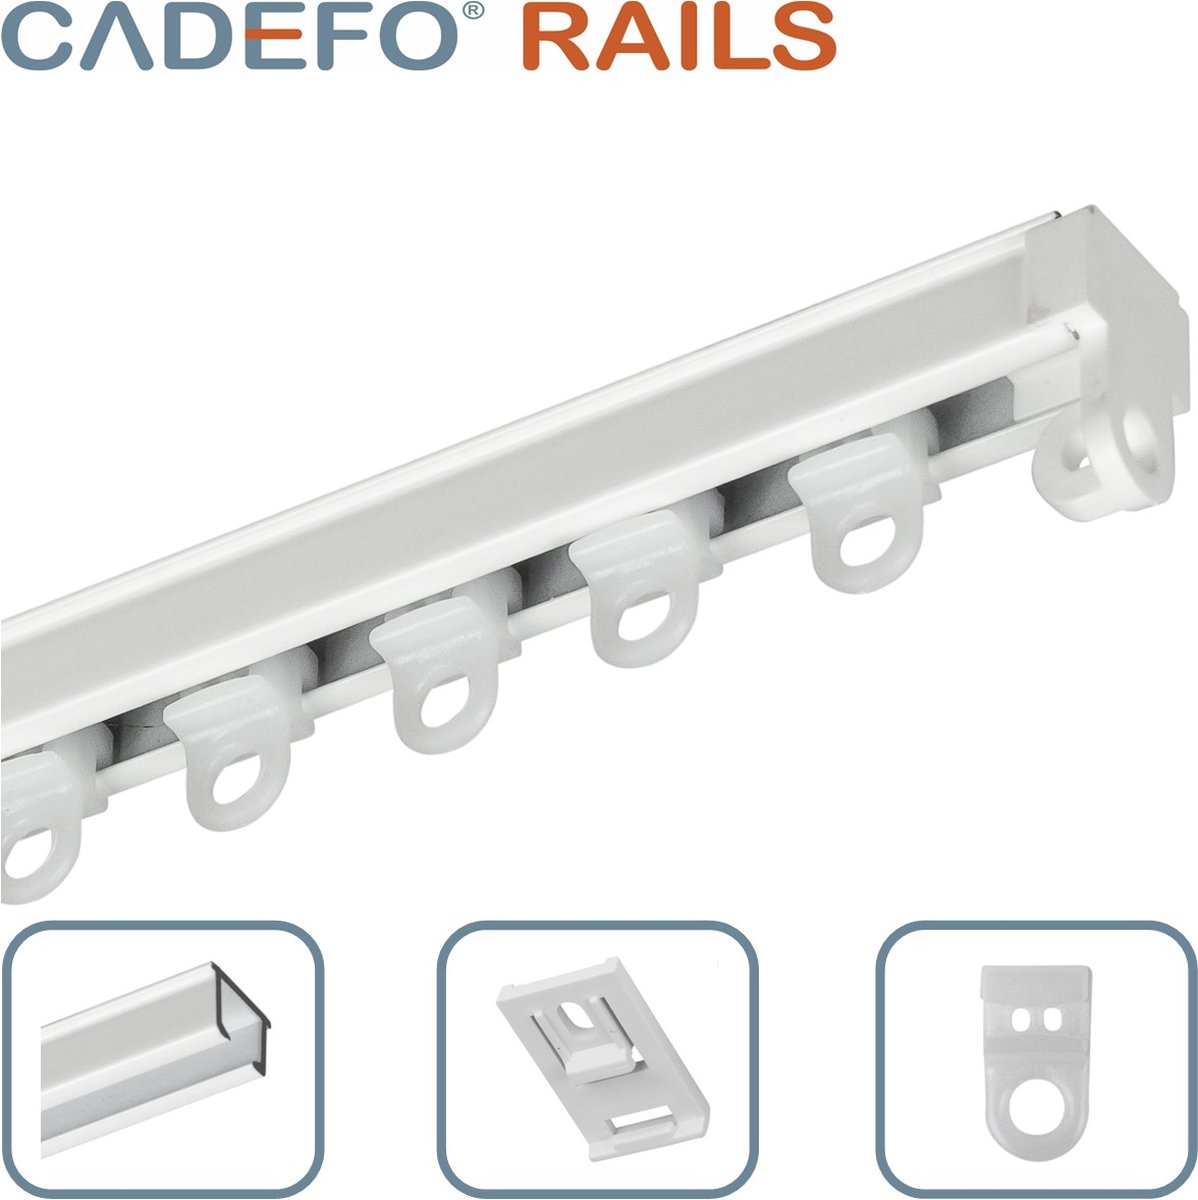 CADEFO RAILS (351 - 400 cm) Gordijnrails - Compleet op maat! - UIT 1 STUK - Leverbaar tot 6 meter - Plafondbevestiging - Lengte 387 cm